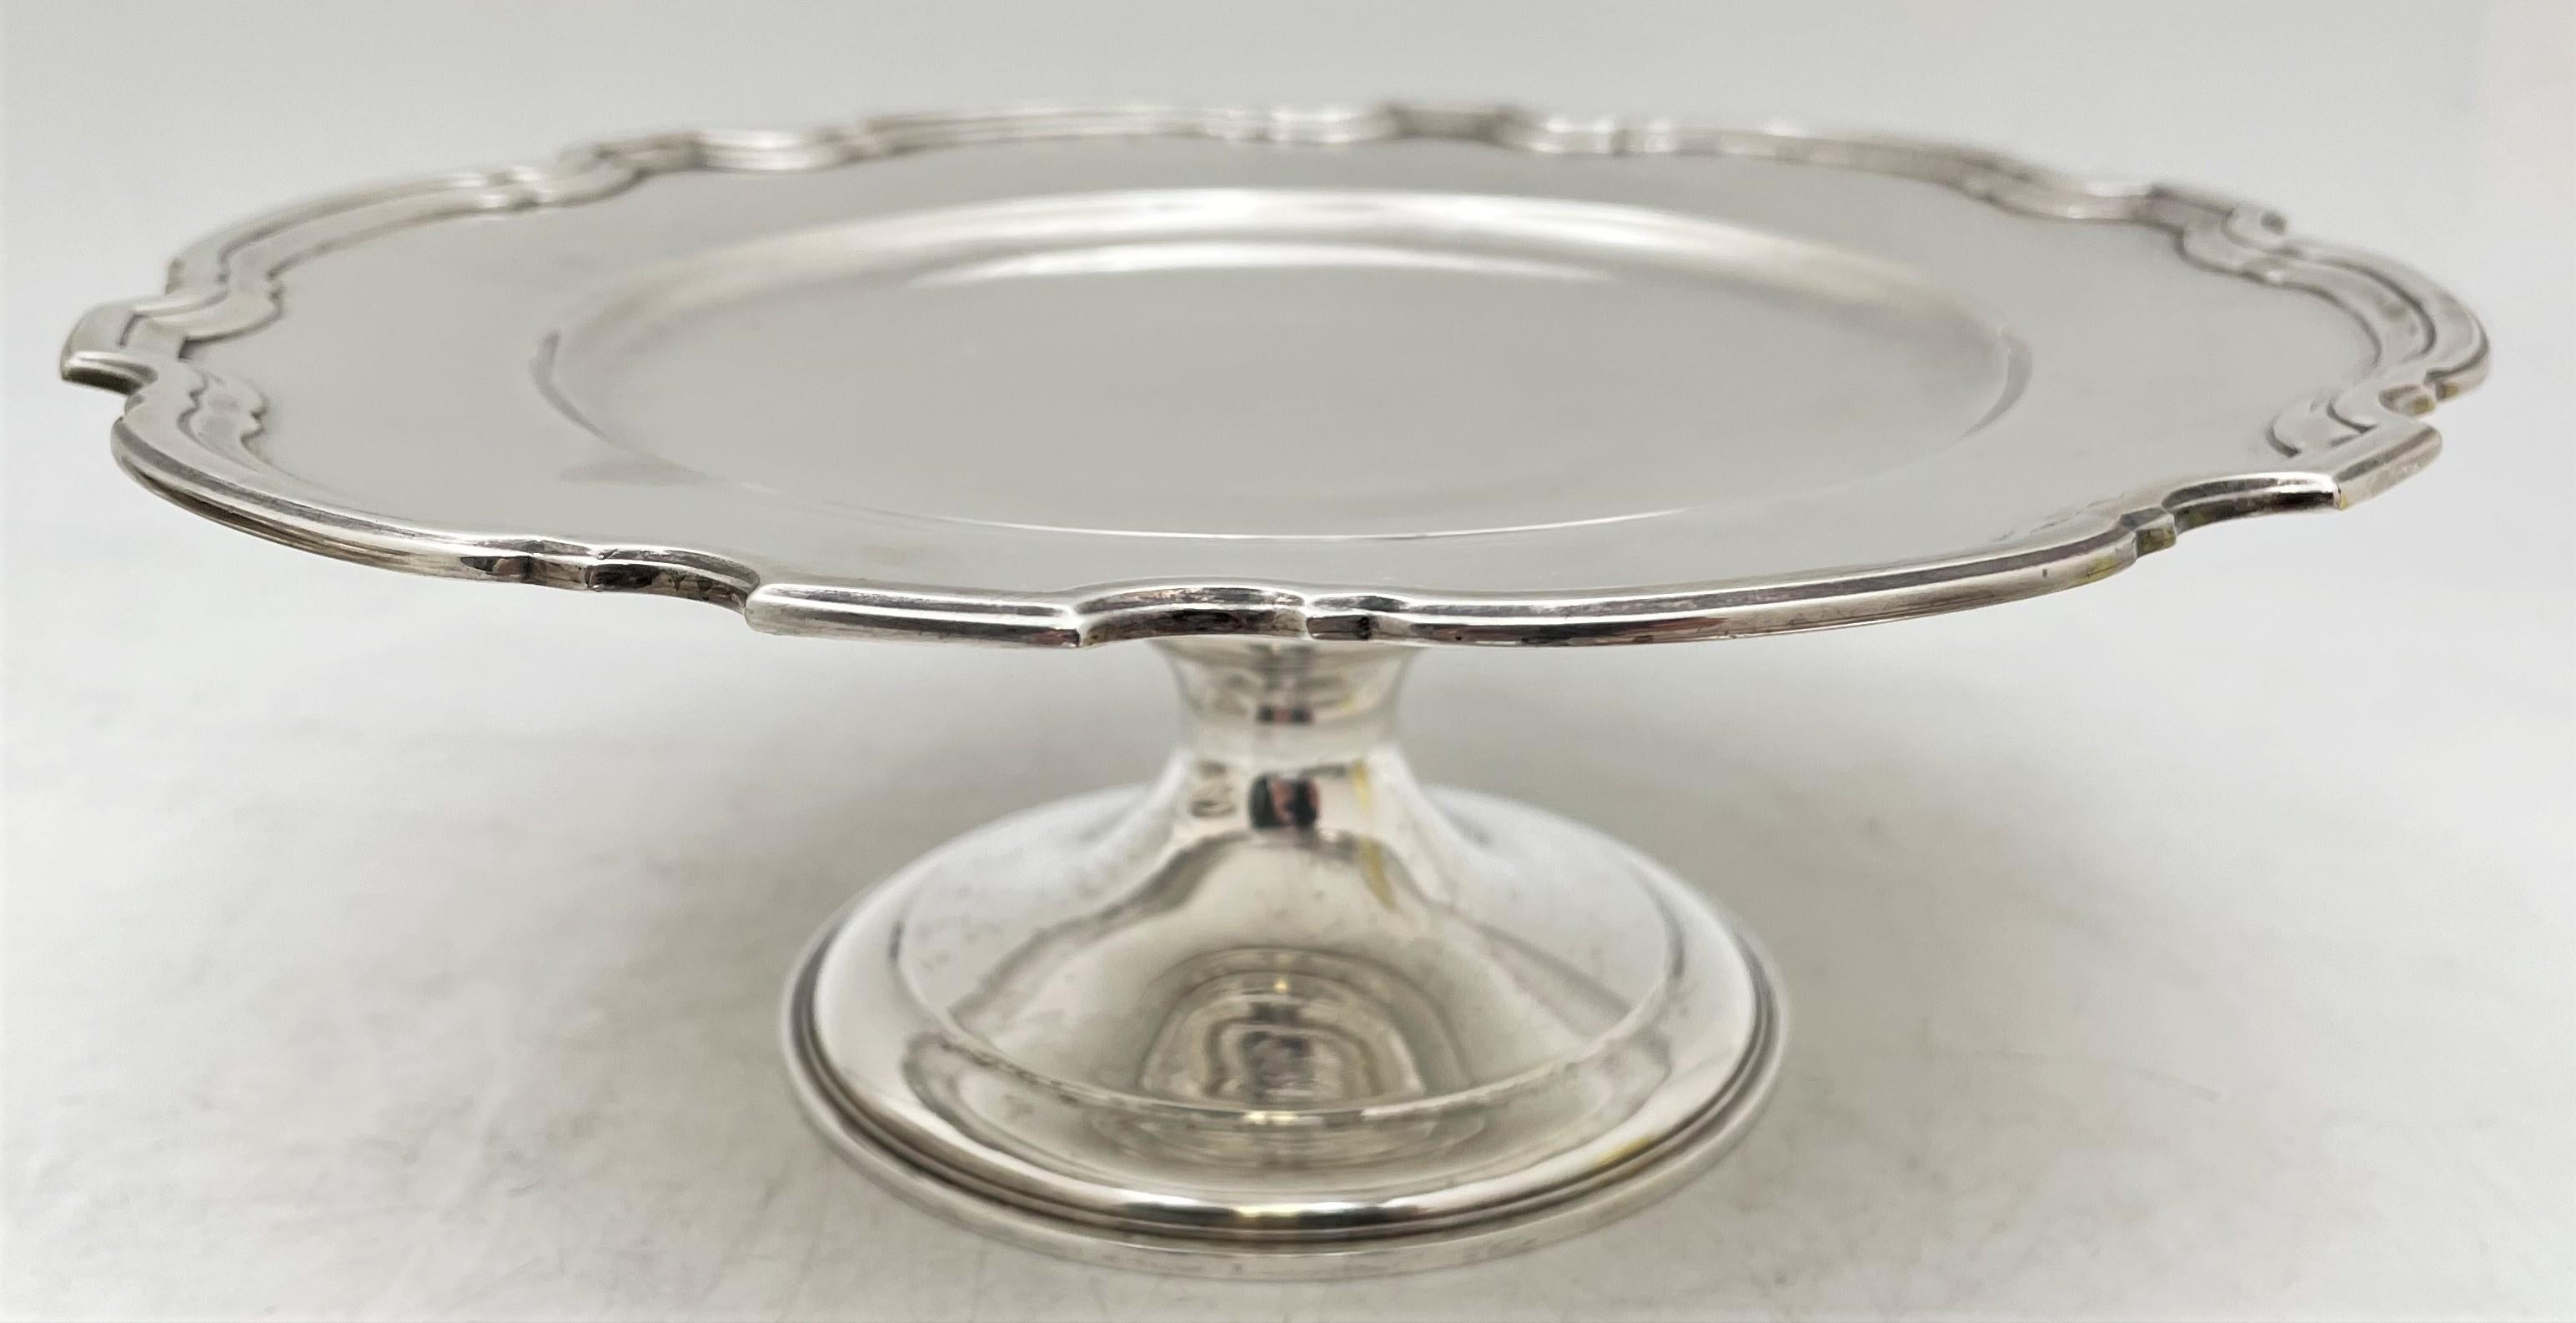 Tiffany & Co., tazza ou plat sur pied en argent sterling, modèle 20270 de Hampton, datant de 1923 et de style Art Déco, avec un large bord curviligne à inclinaison géométrique. Elle mesure 9'' de diamètre par 3 1/2'' de hauteur, pèse 19 onces troy,